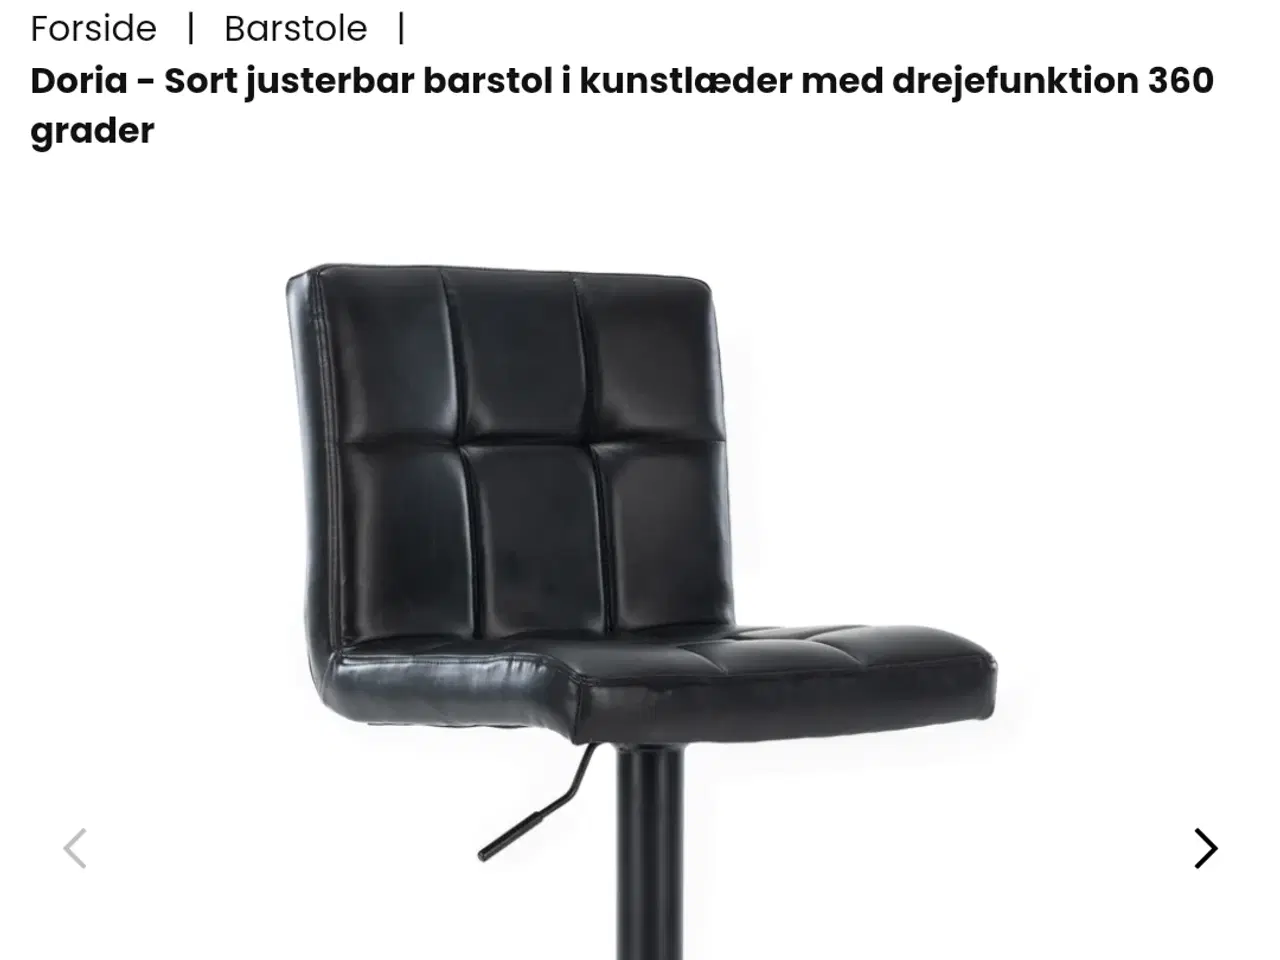 Billede 1 - 4 stk sorte barstole fra Nimara - fejlkøb